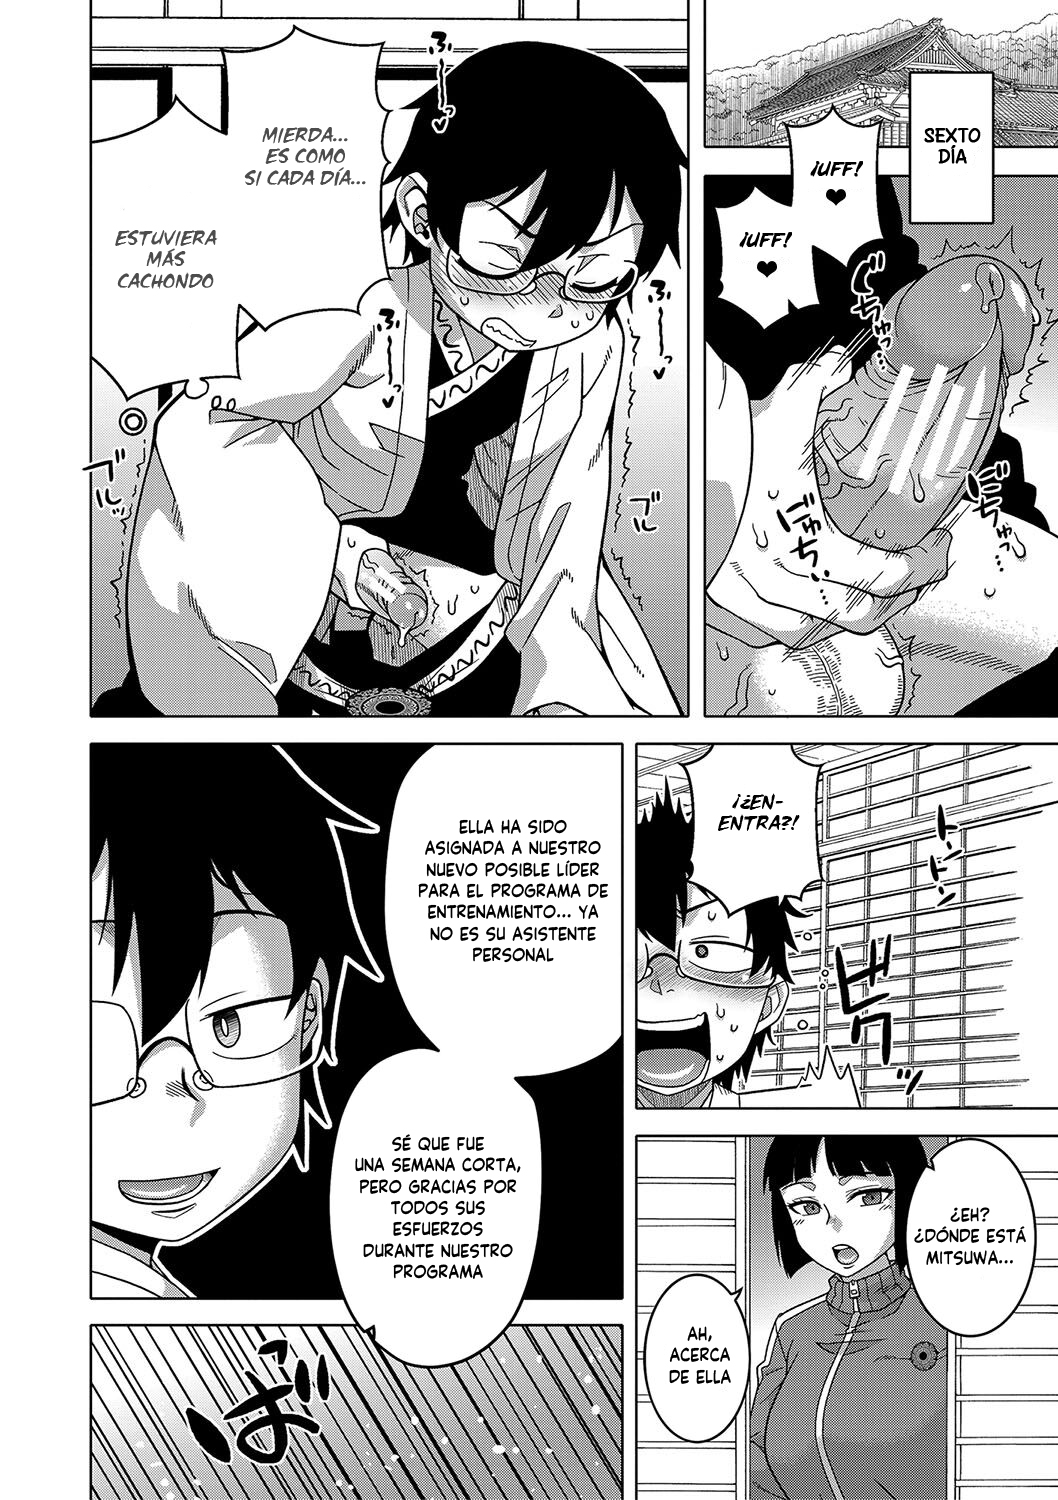 Manga KAMI-SAMA NO TSUKURIKATA-THE MAKING OF A CULT LEADER Chapter 1 image number 47